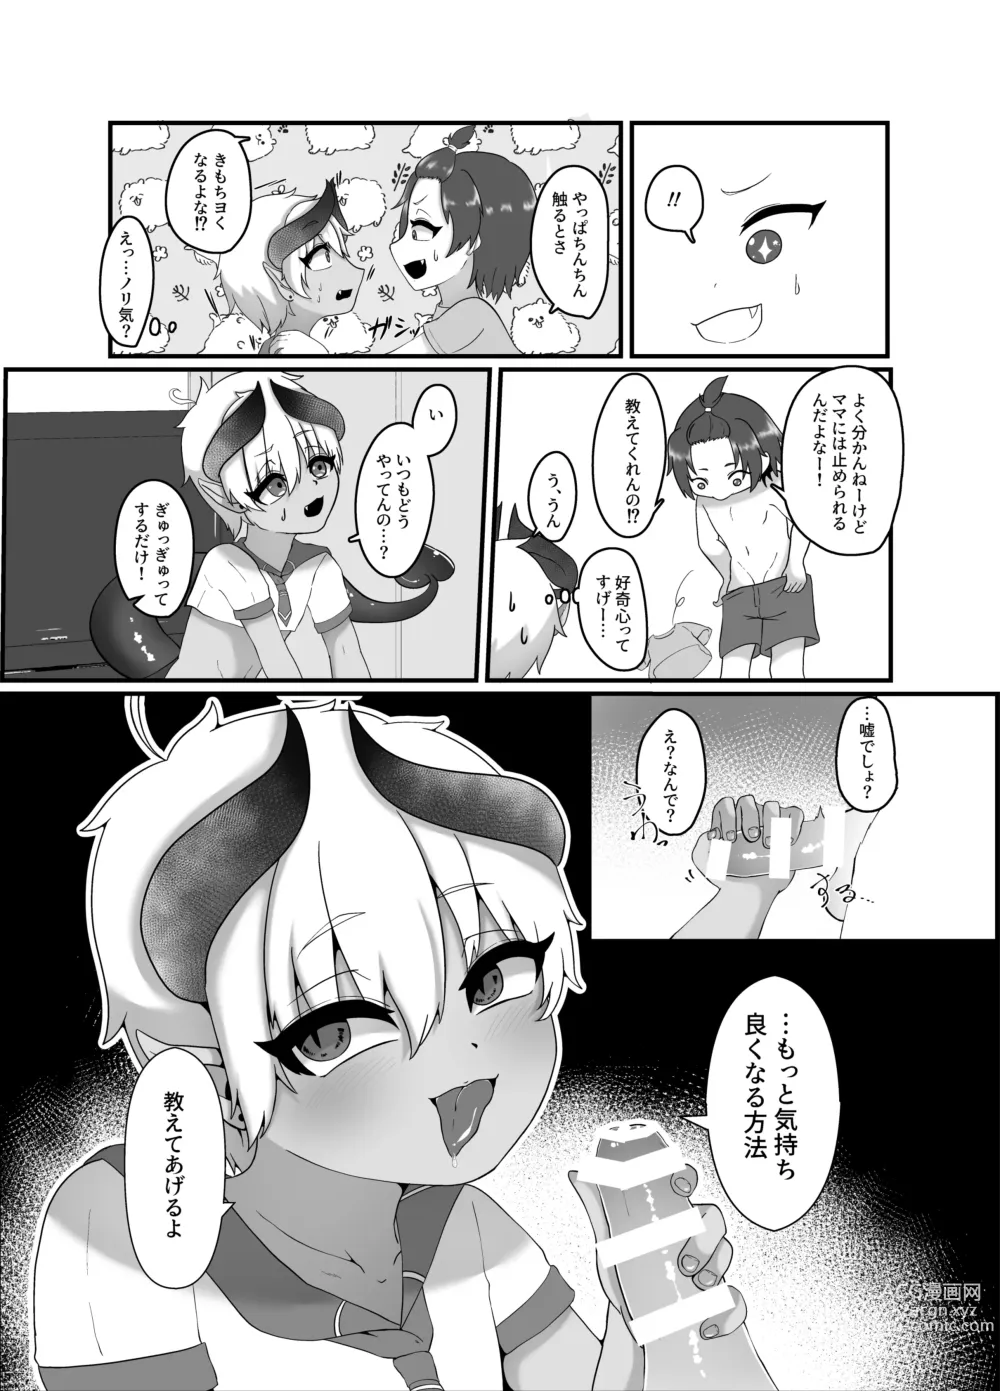 Page 8 of doujinshi 俺とお勉強しよっ!